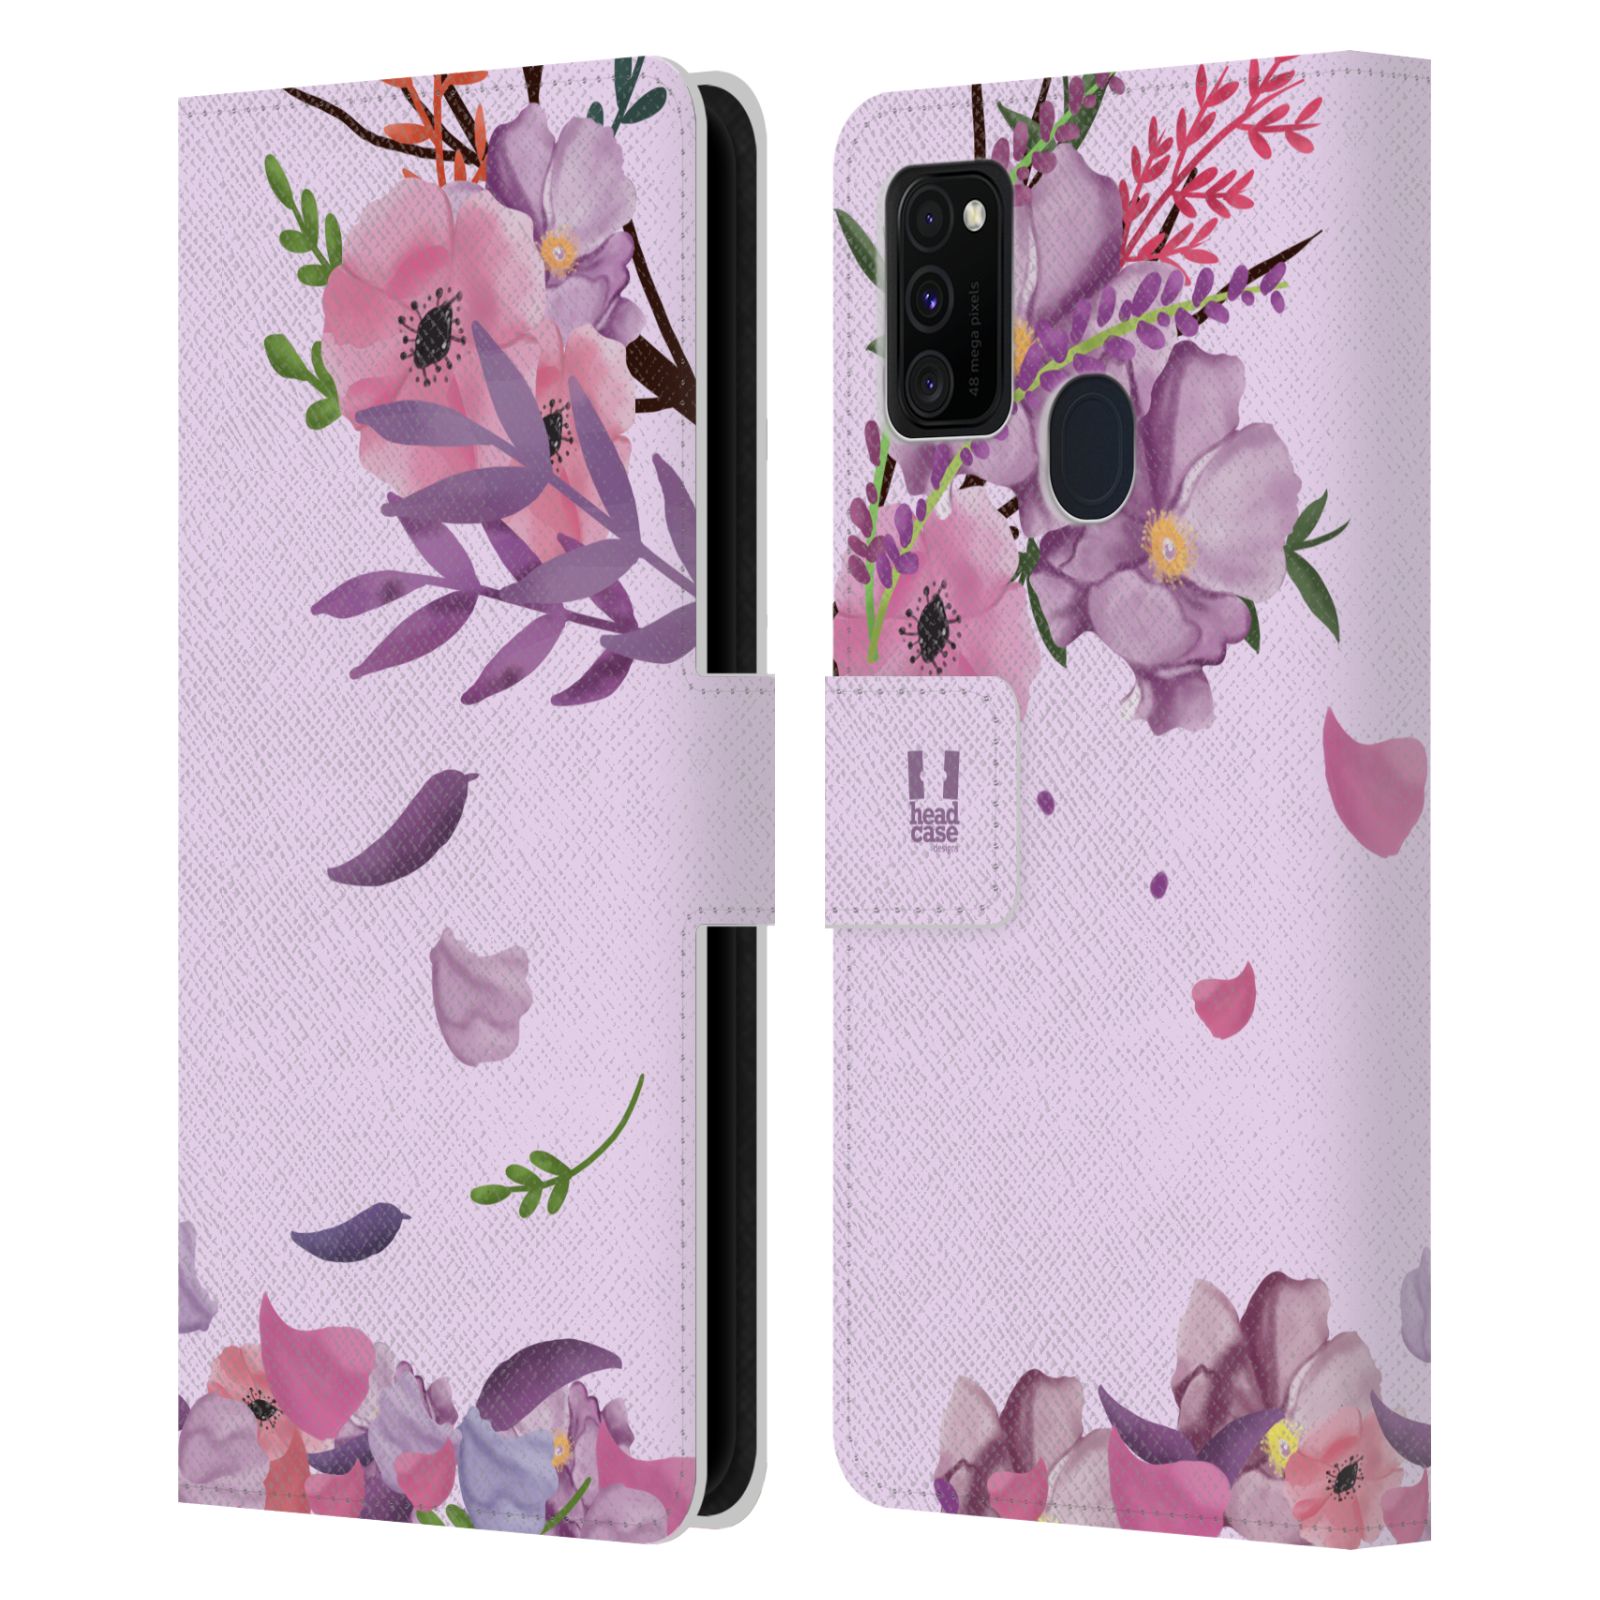 Pouzdro na mobil Samsung Galaxy M21 - HEAD CASE - Rozkvetlé růže a listy růžová